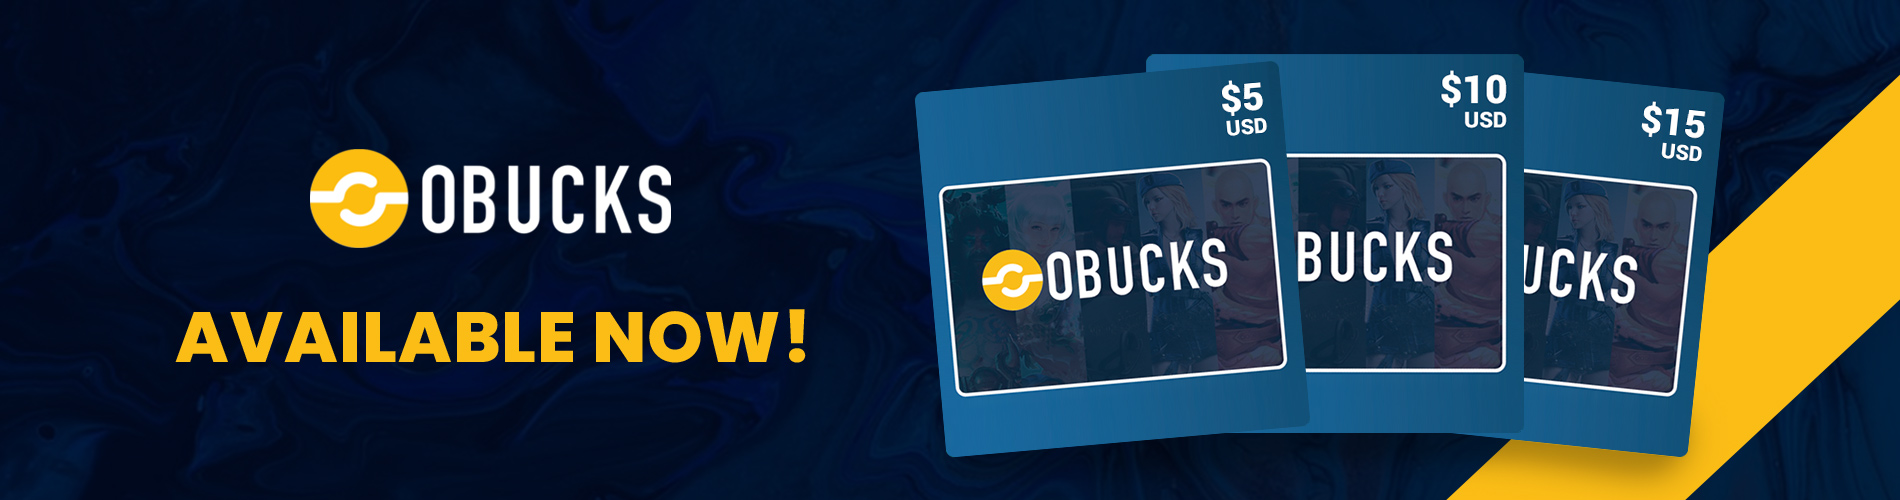 Obucks - Gift Cards